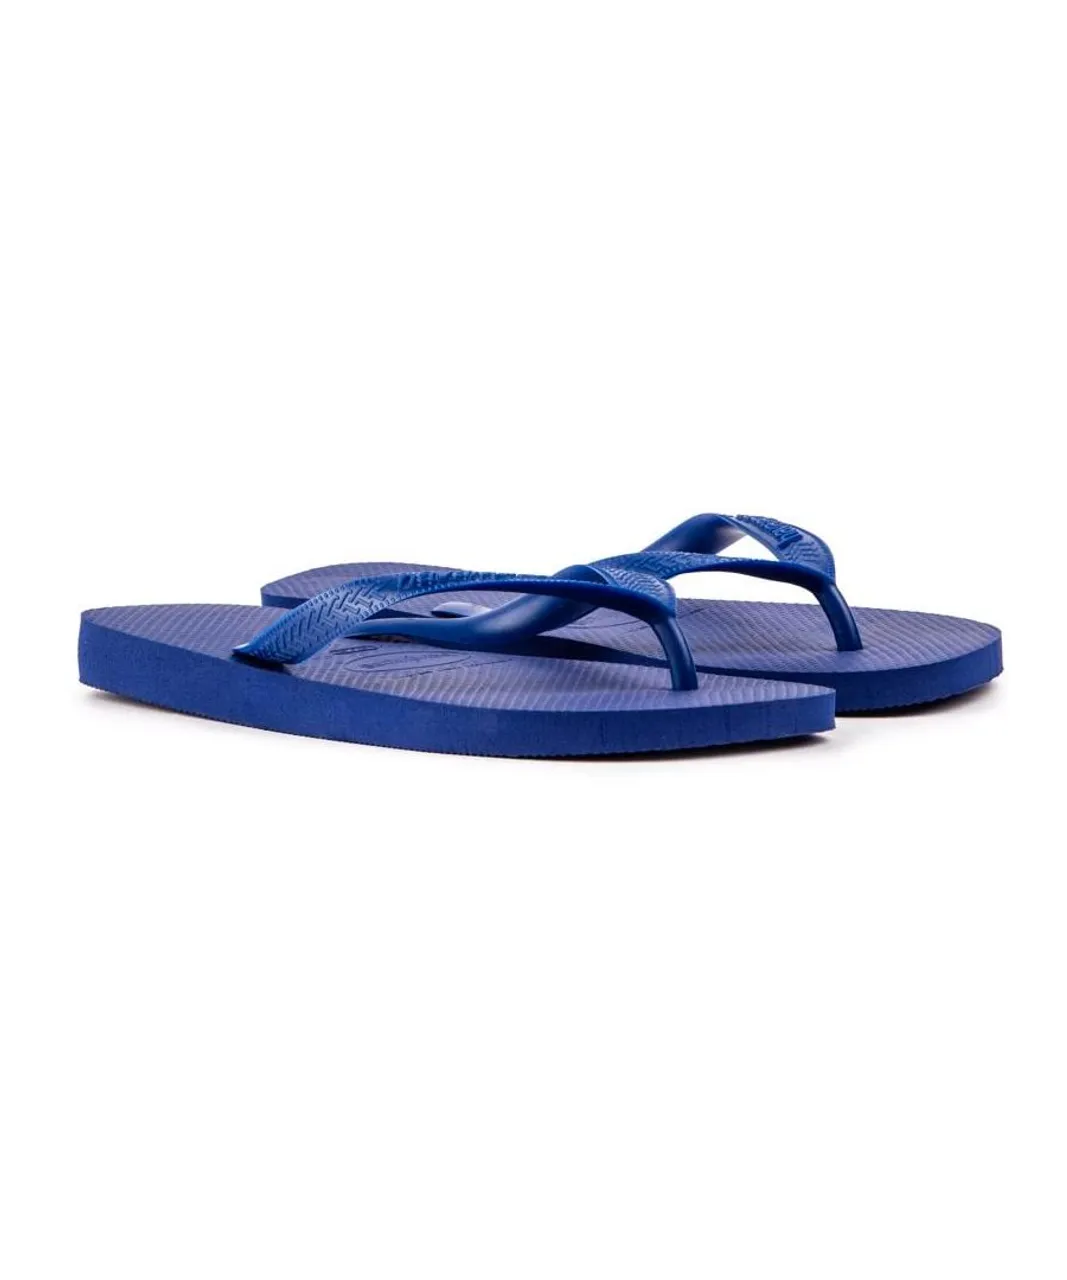 Havaianas Mens Top Sandals - Blue PVC